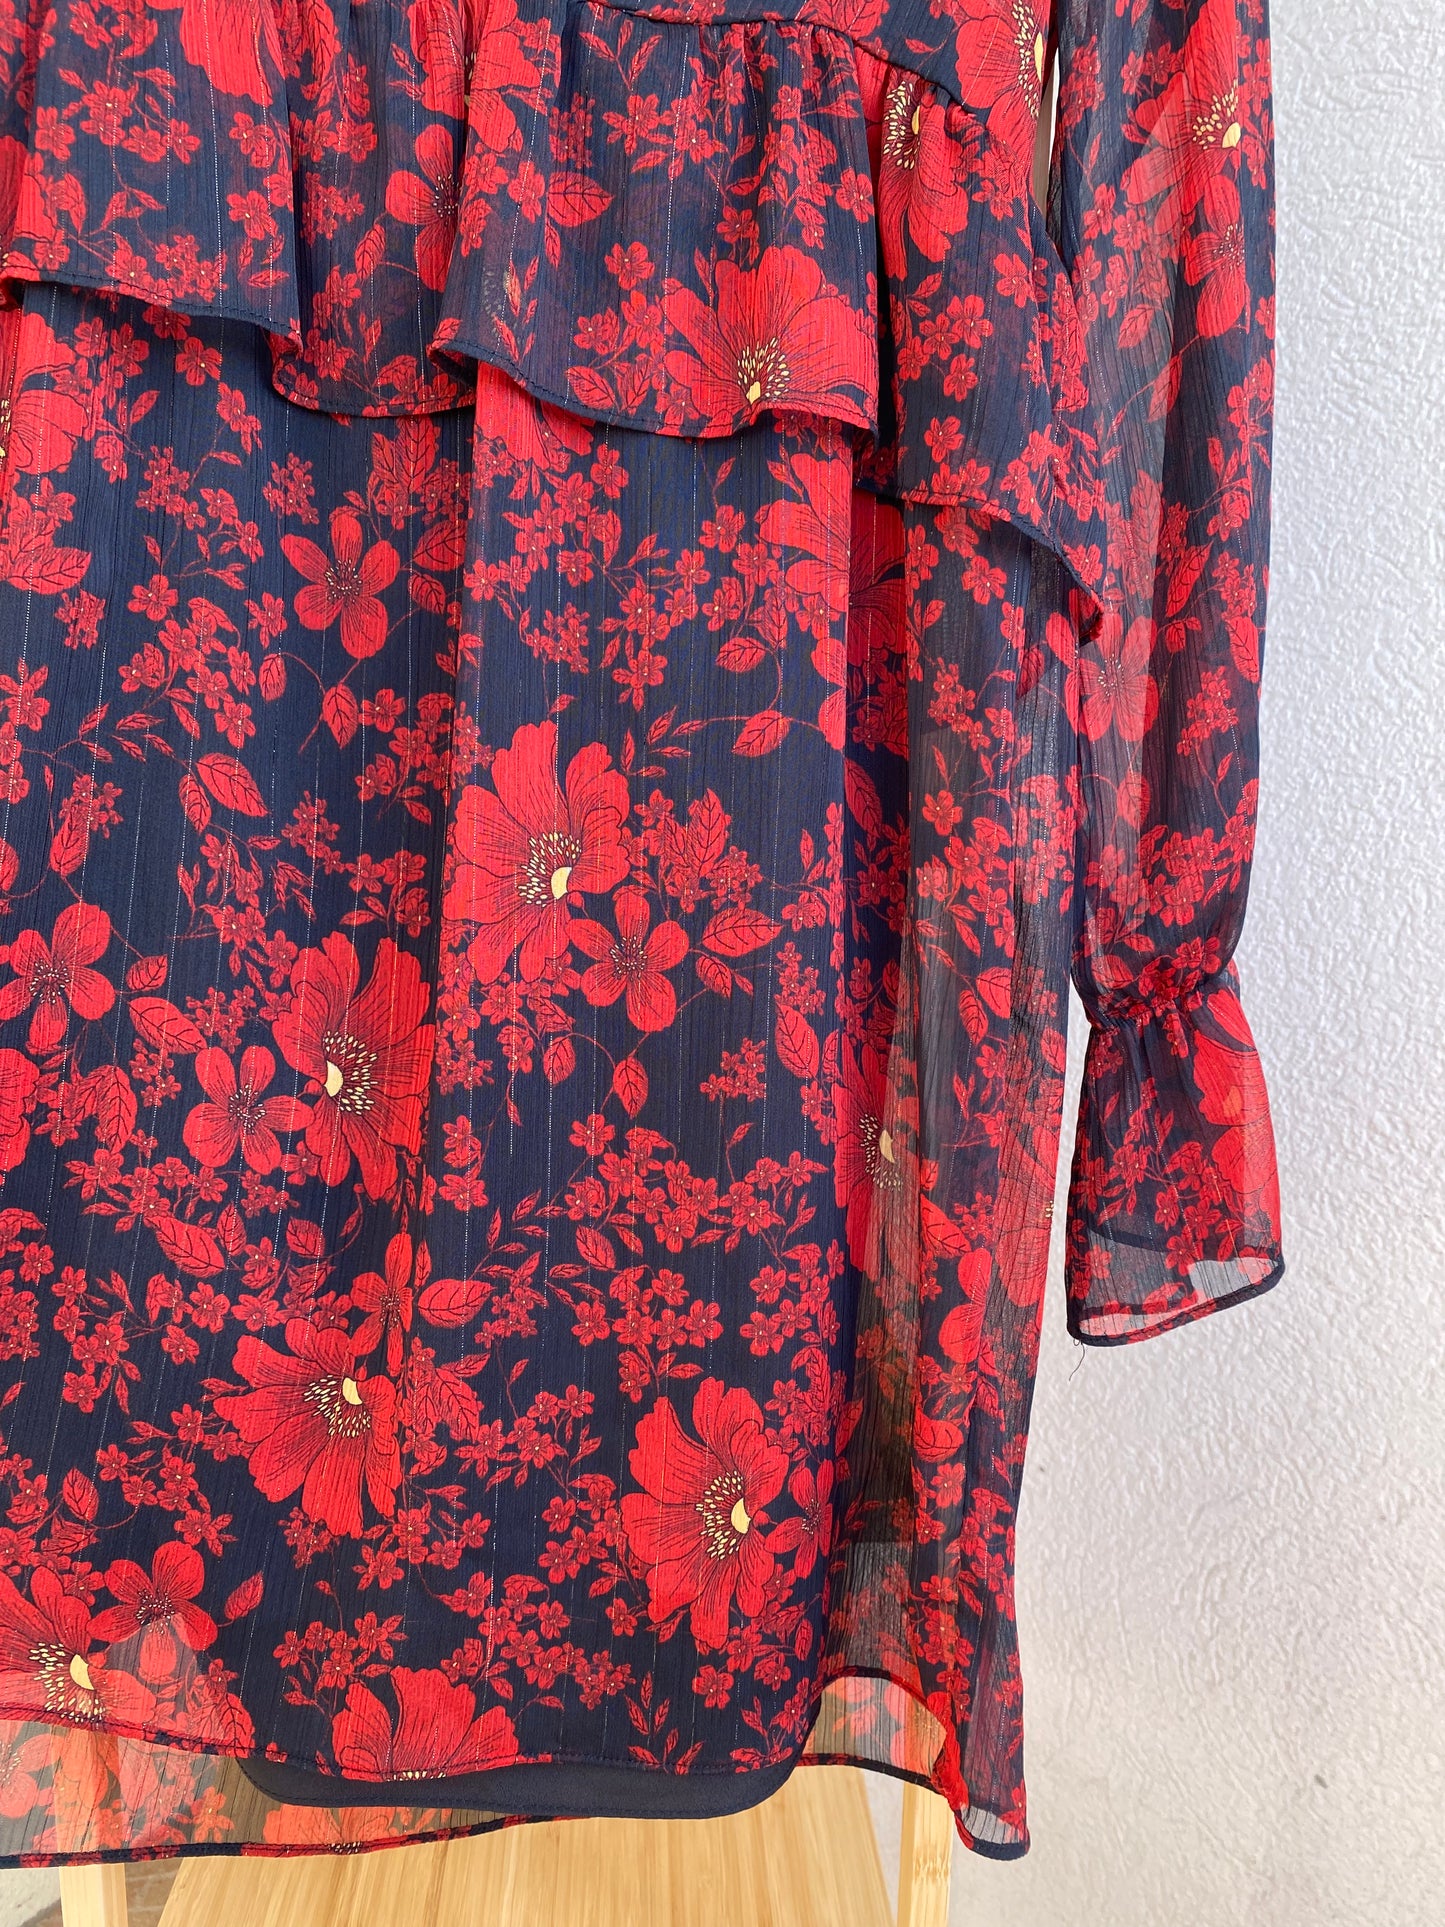 Robe Zara voilage et motifs fleuris Taille XS